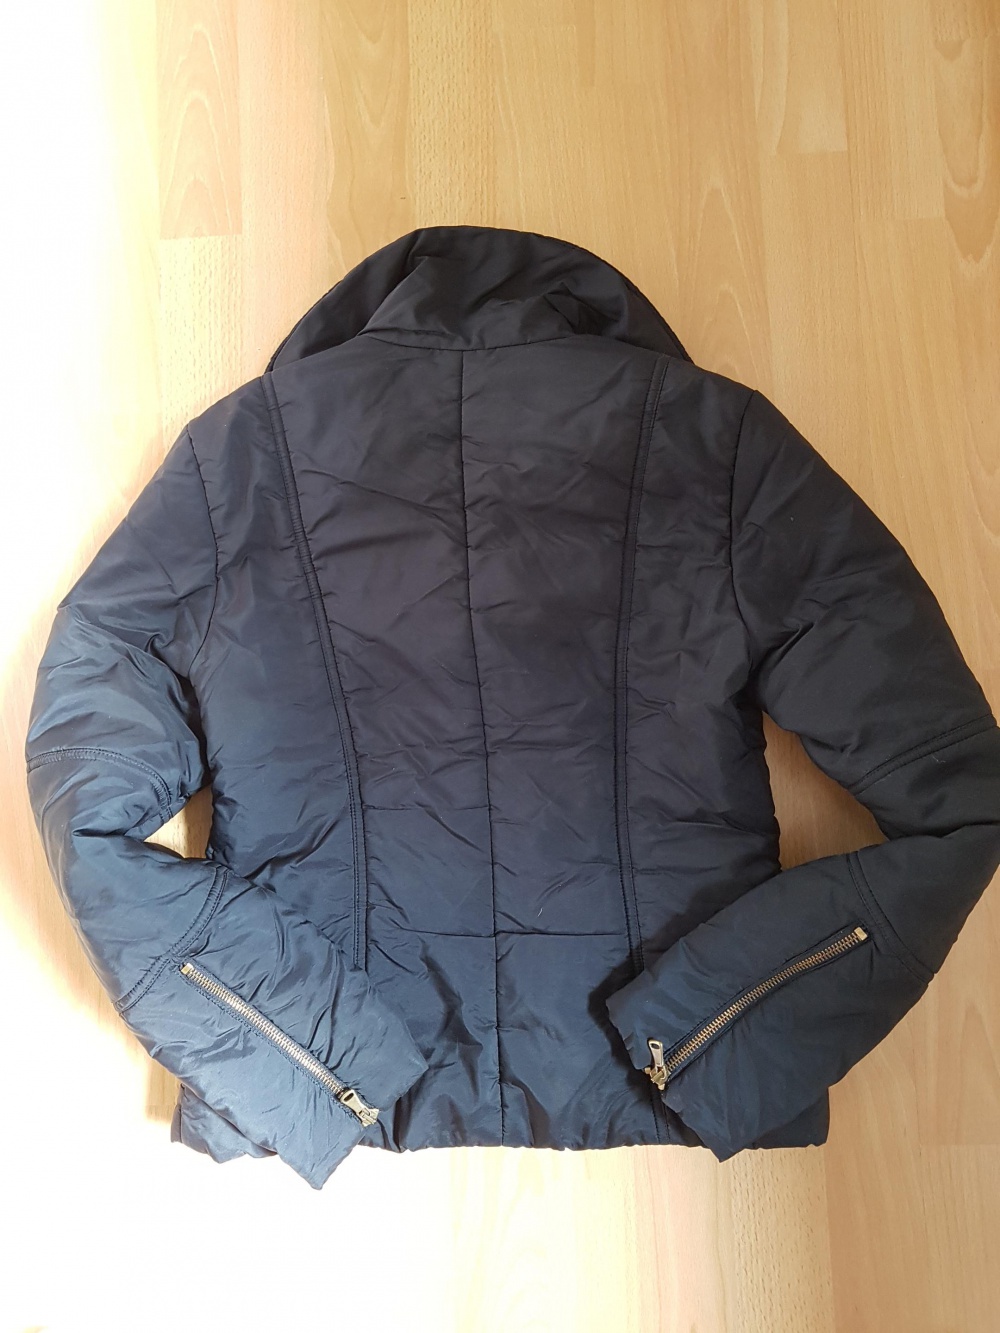 Куртка MAX & Co, размер S